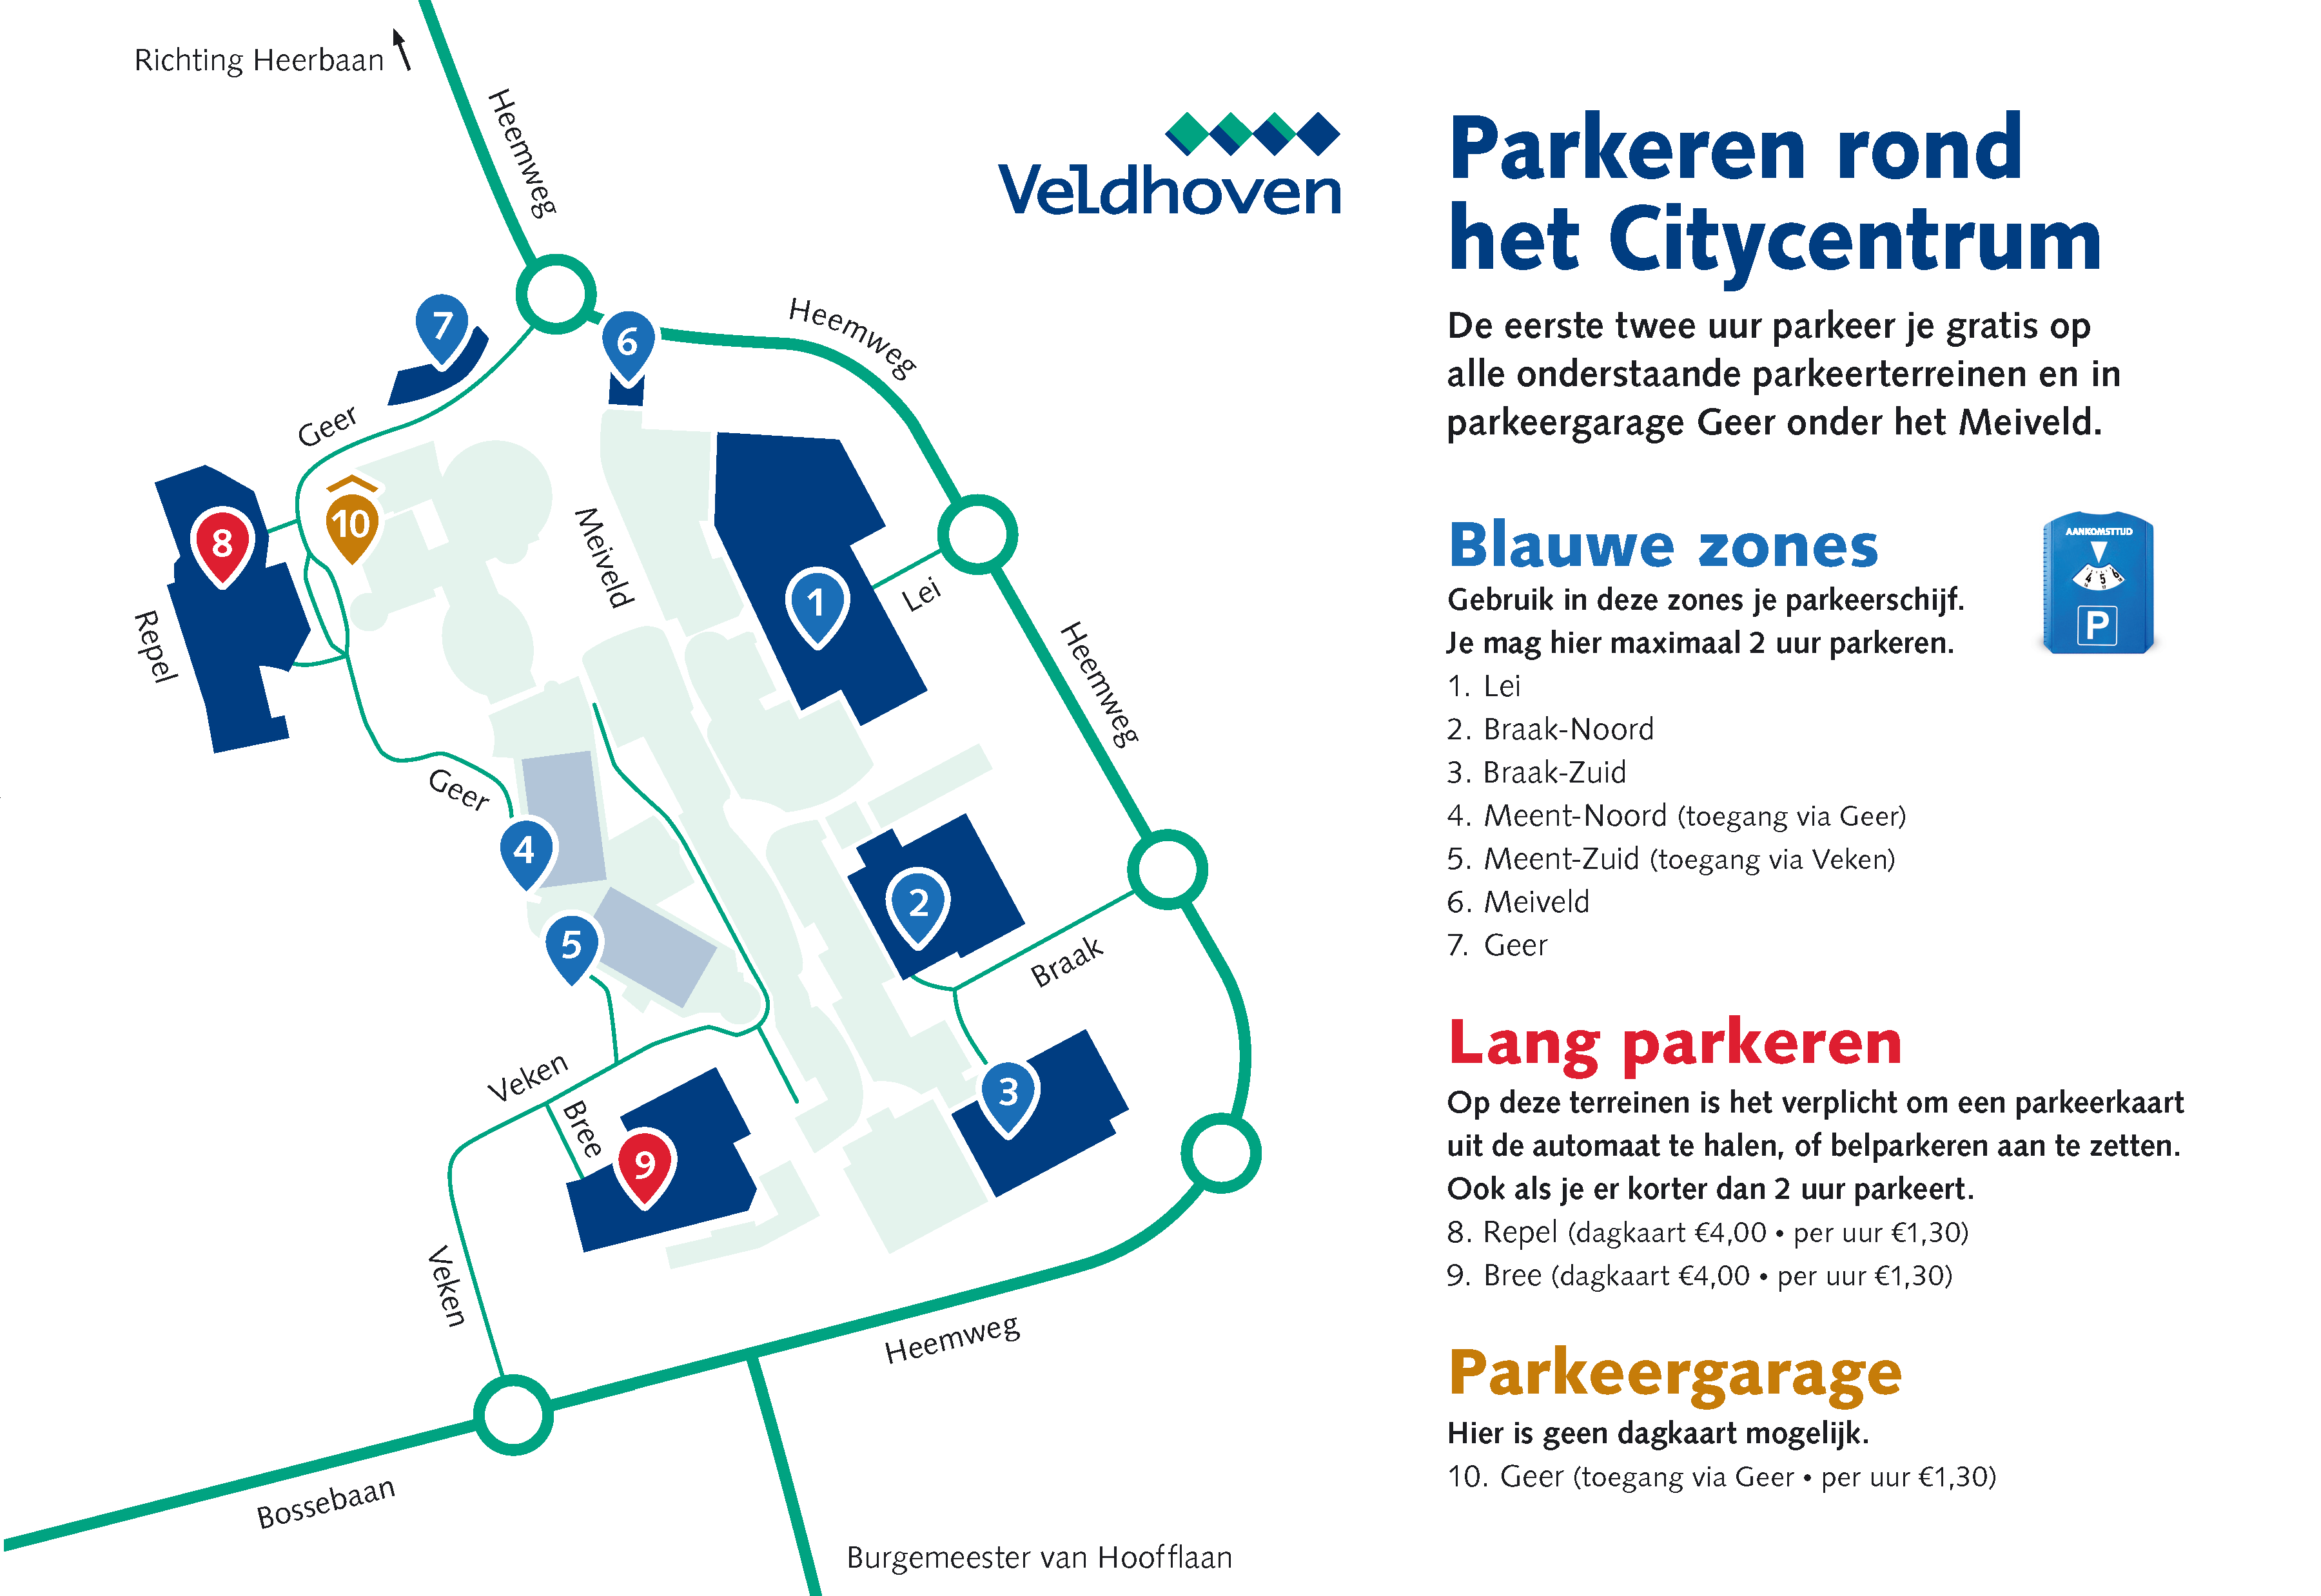 Kaart parkeren rond het Citycentrum: blauwe zones, lang parkeren en parkeergarage